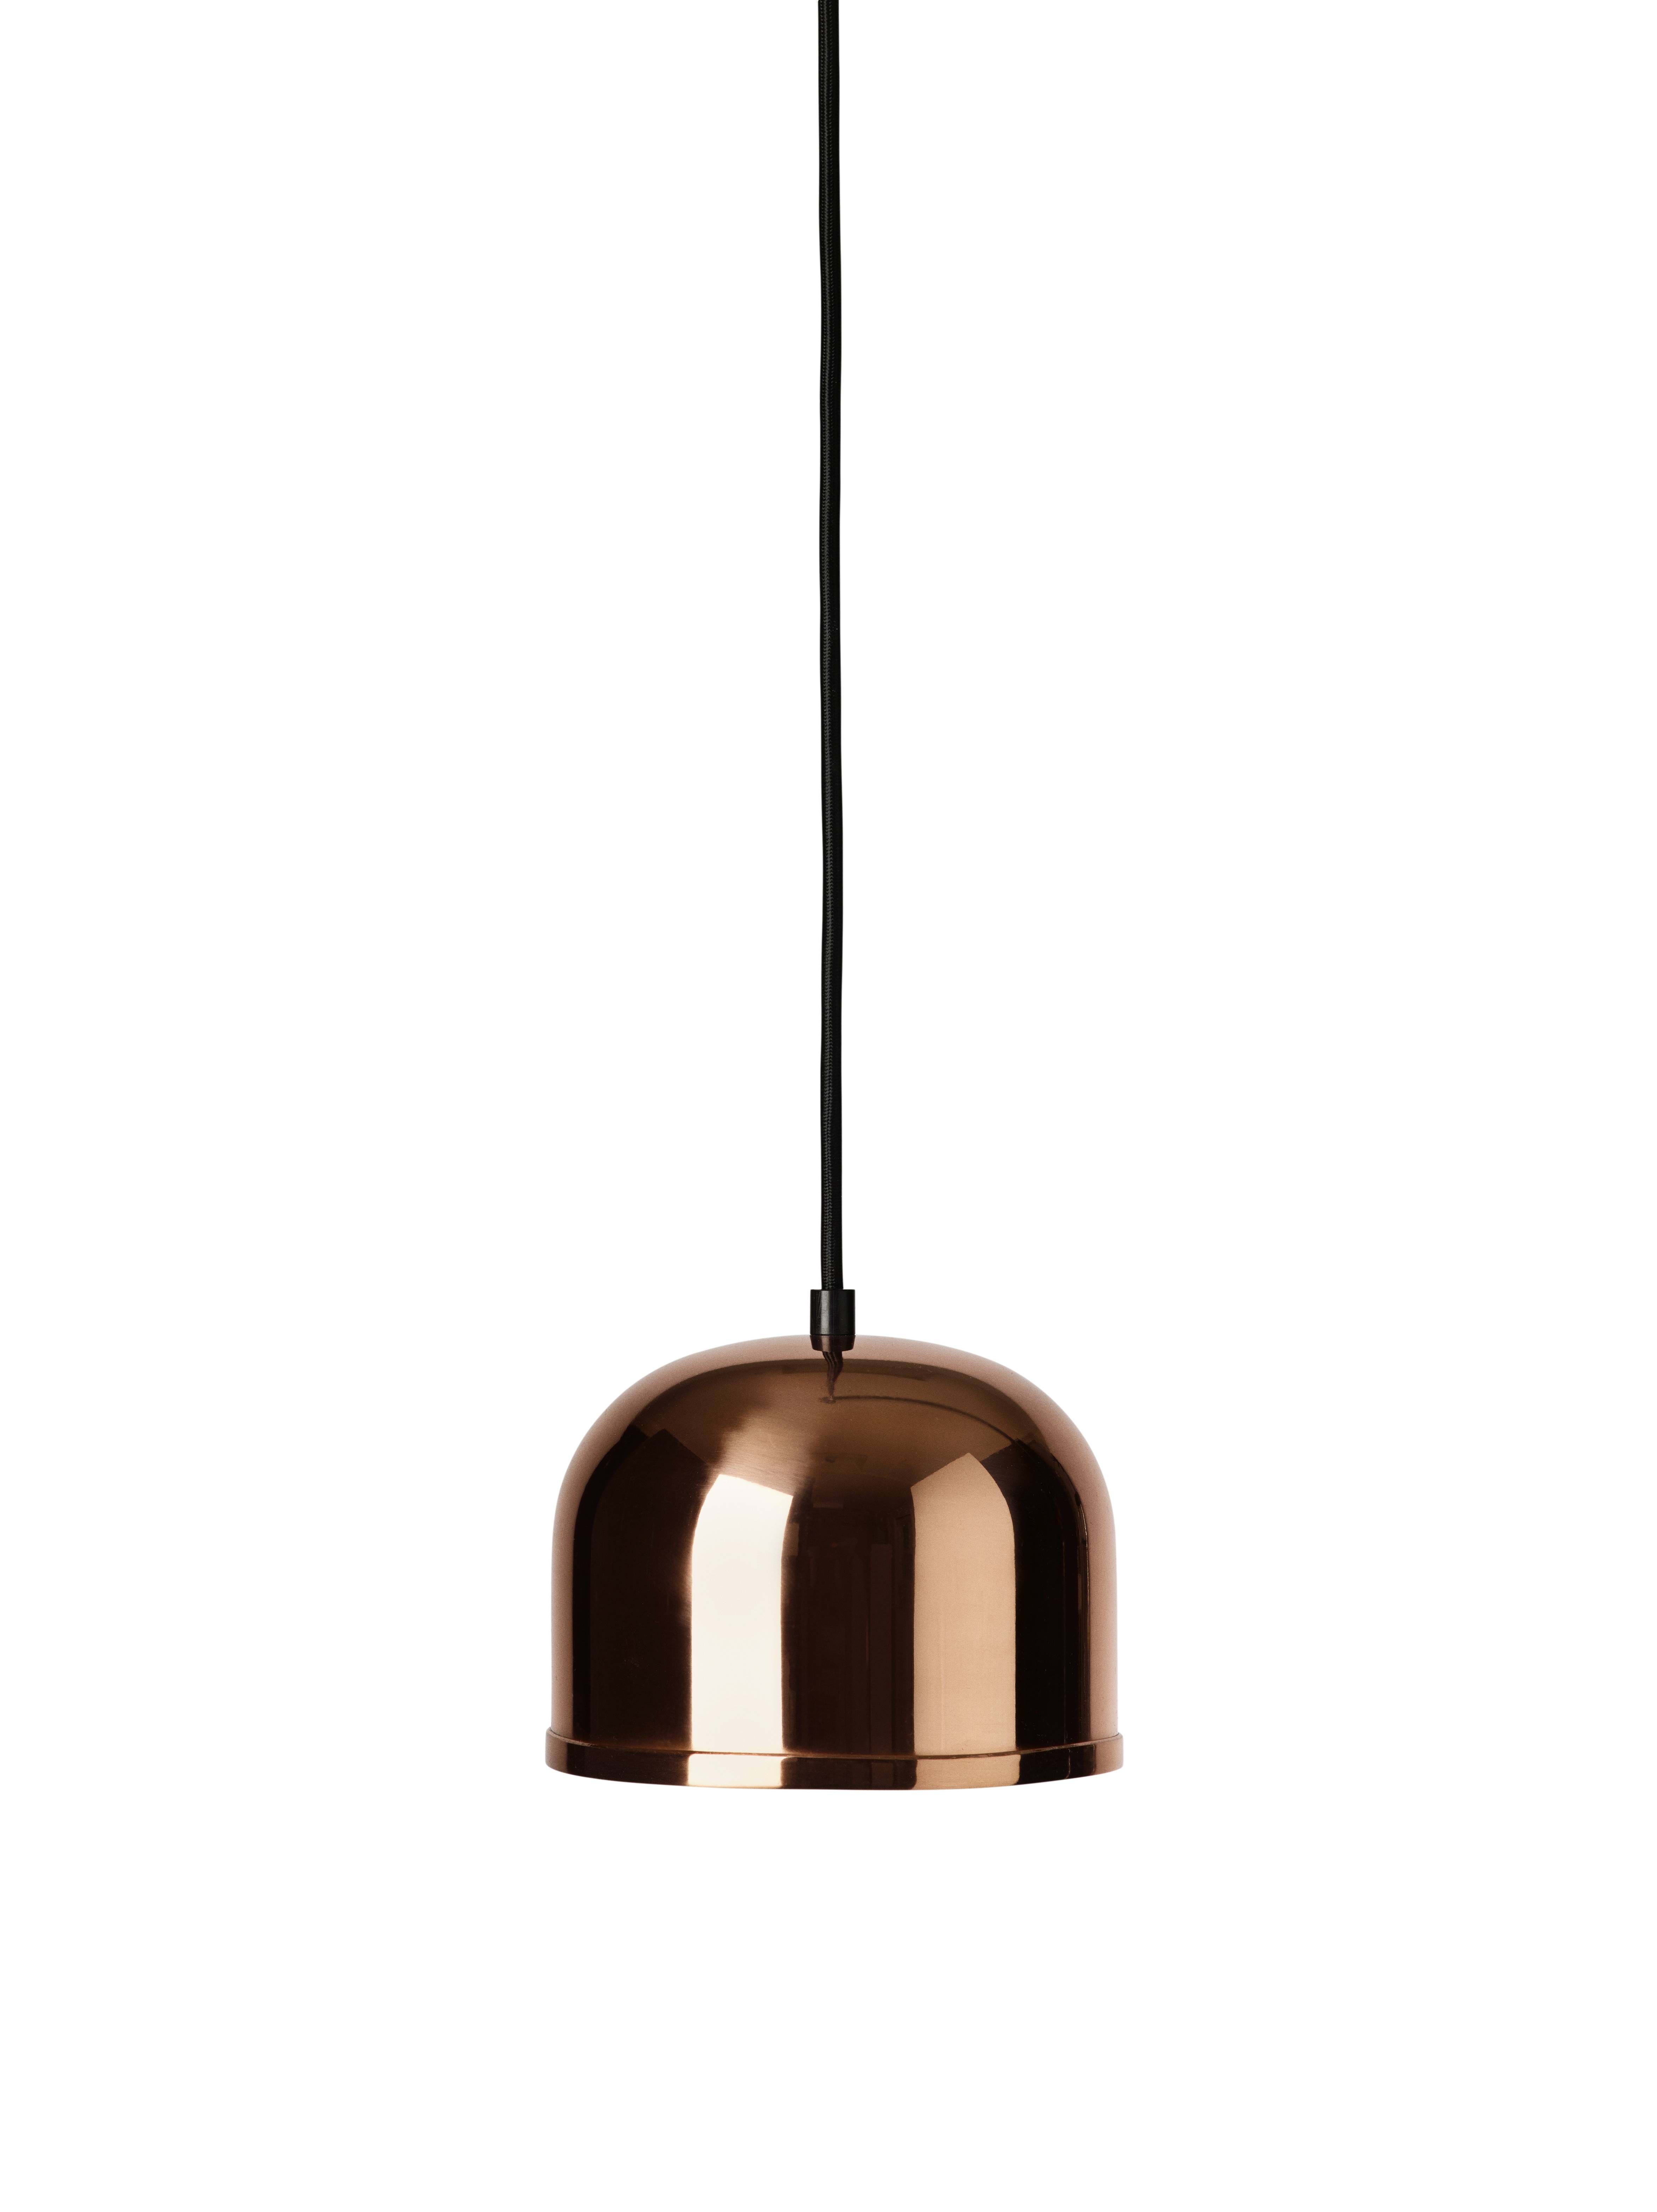 Lampa Gm 15 Copper